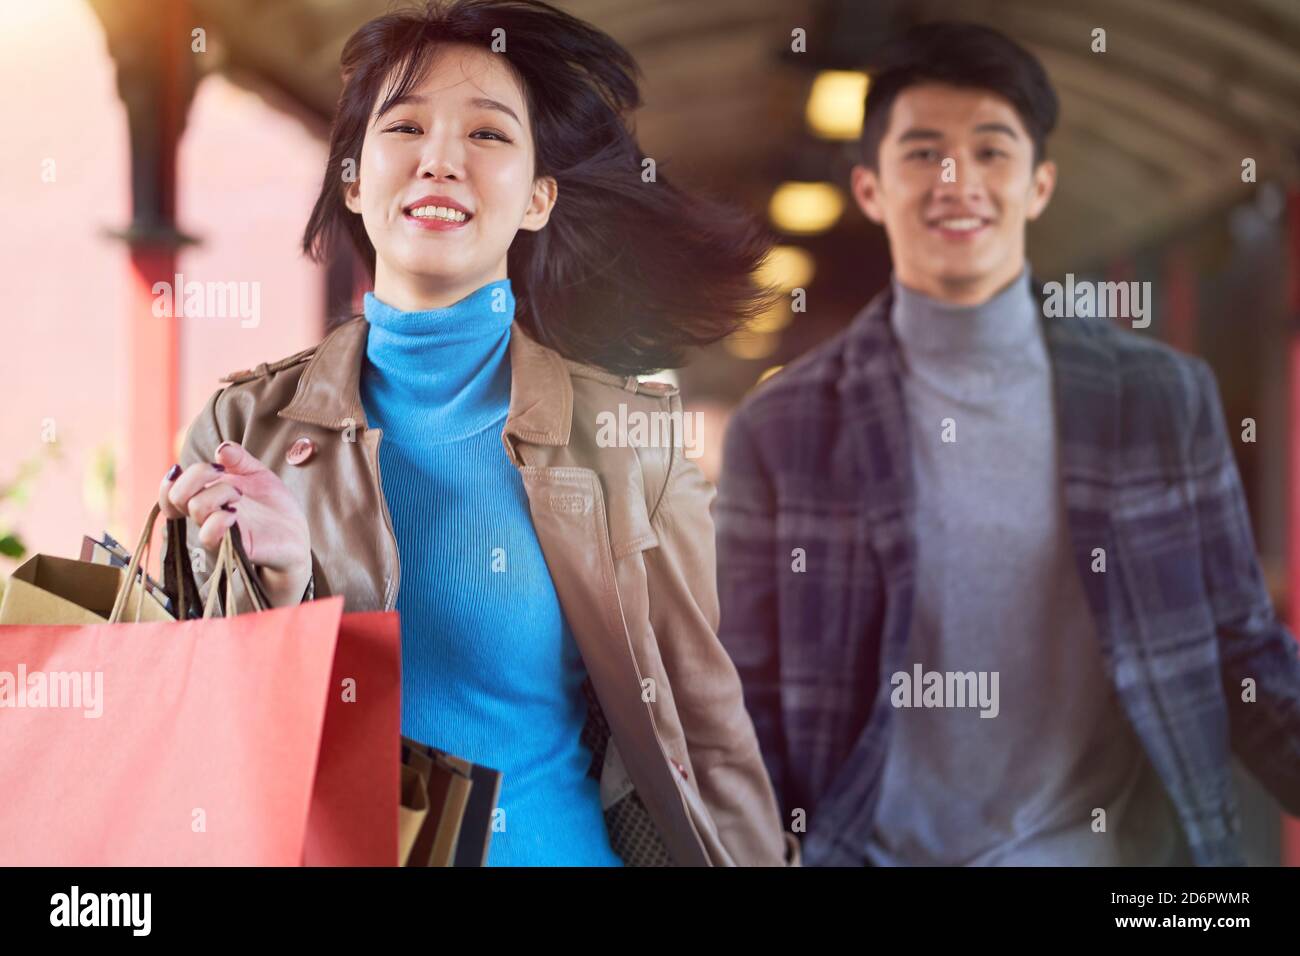 Junge asiatische Paar läuft auf Fußgängerüberführung mit Einkaufstaschen In den Händen glücklich und lächelnd Stockfoto